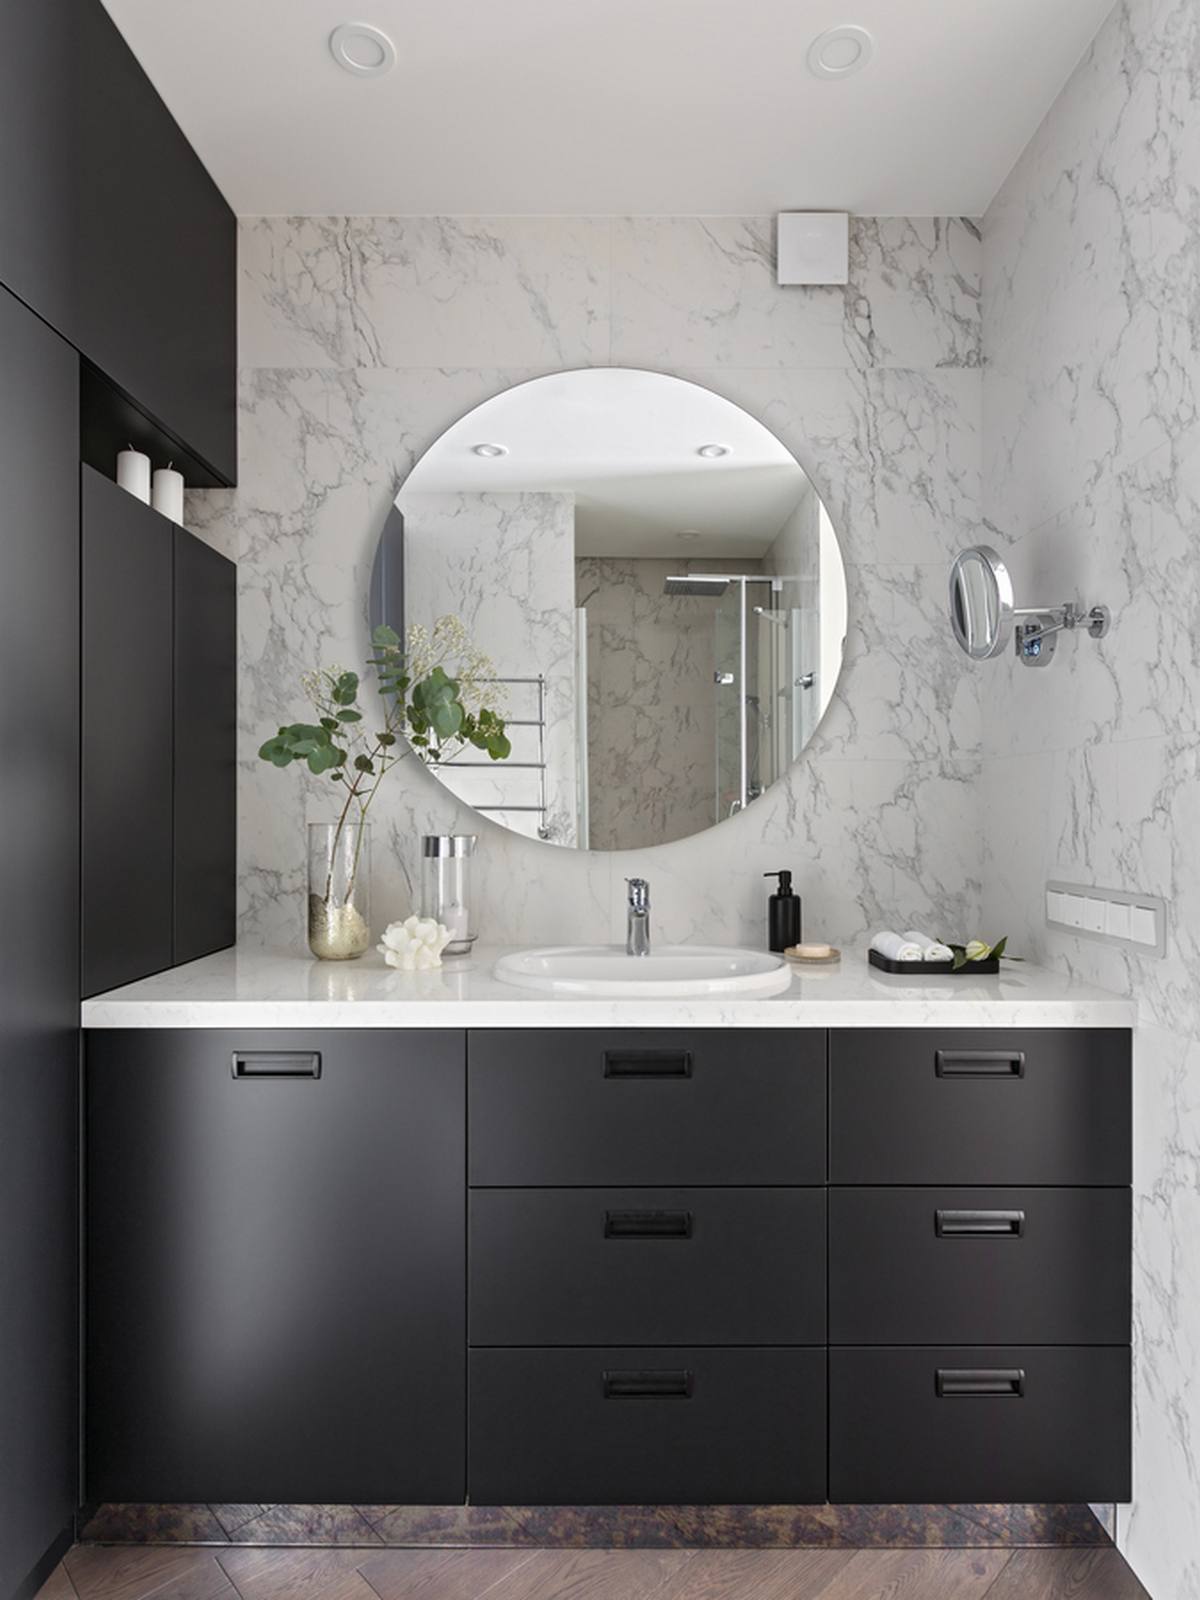 Tương tự phòng bếp, phòng tắm cũng sử dụng hệ tủ lưu trữ màu xám để tạo cái nhìn mạnh mẽ, đồng thời trung hòa sắc xanh lá cây và tím trong căn hộ. Tấm gương hình tròn trên nền tường đá cẩm thạch giúp không gian như 'nhân đôi' bằng thị giác.